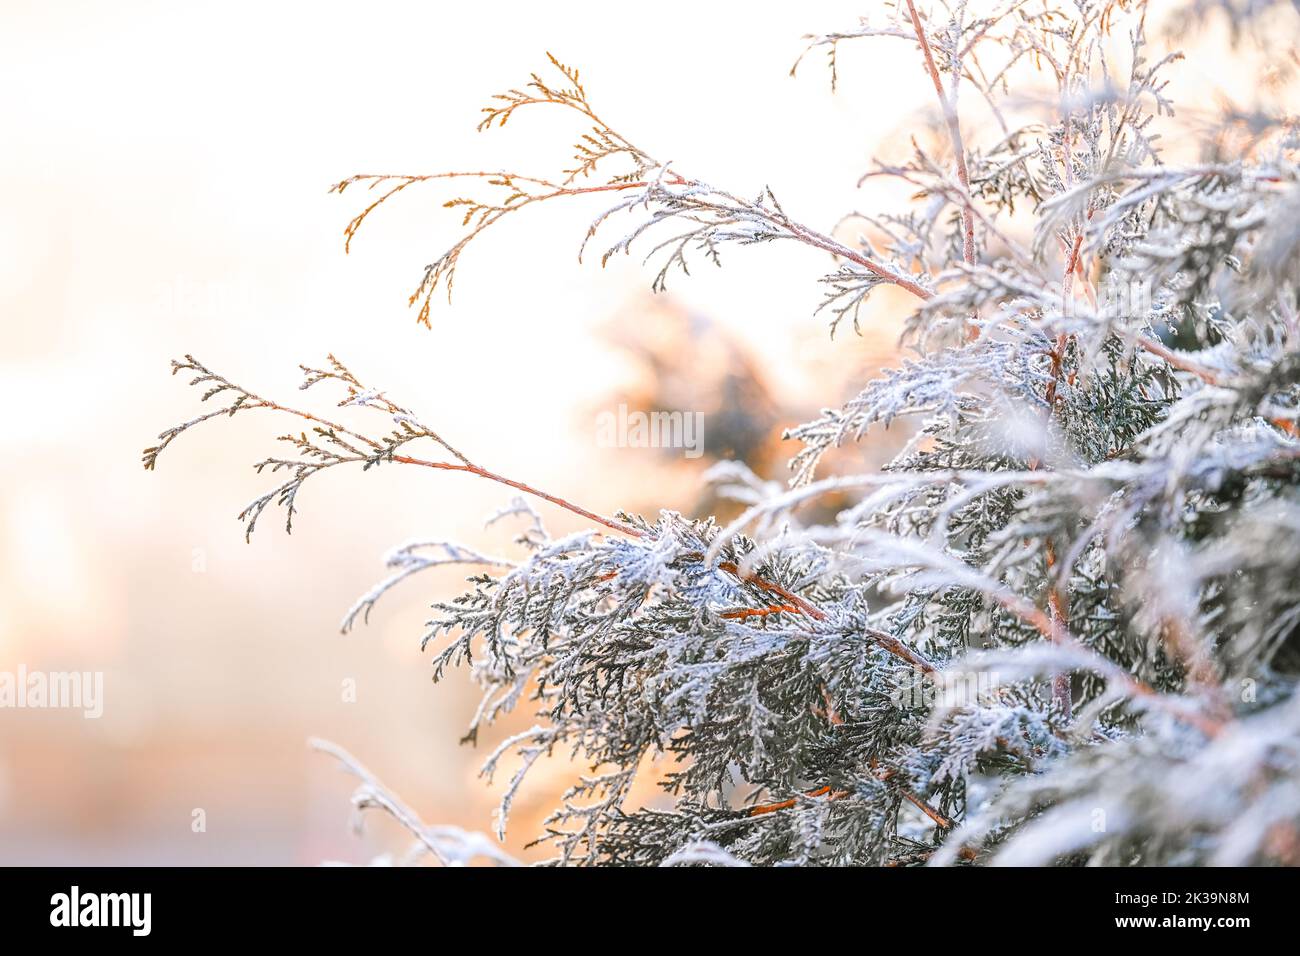 frosty background